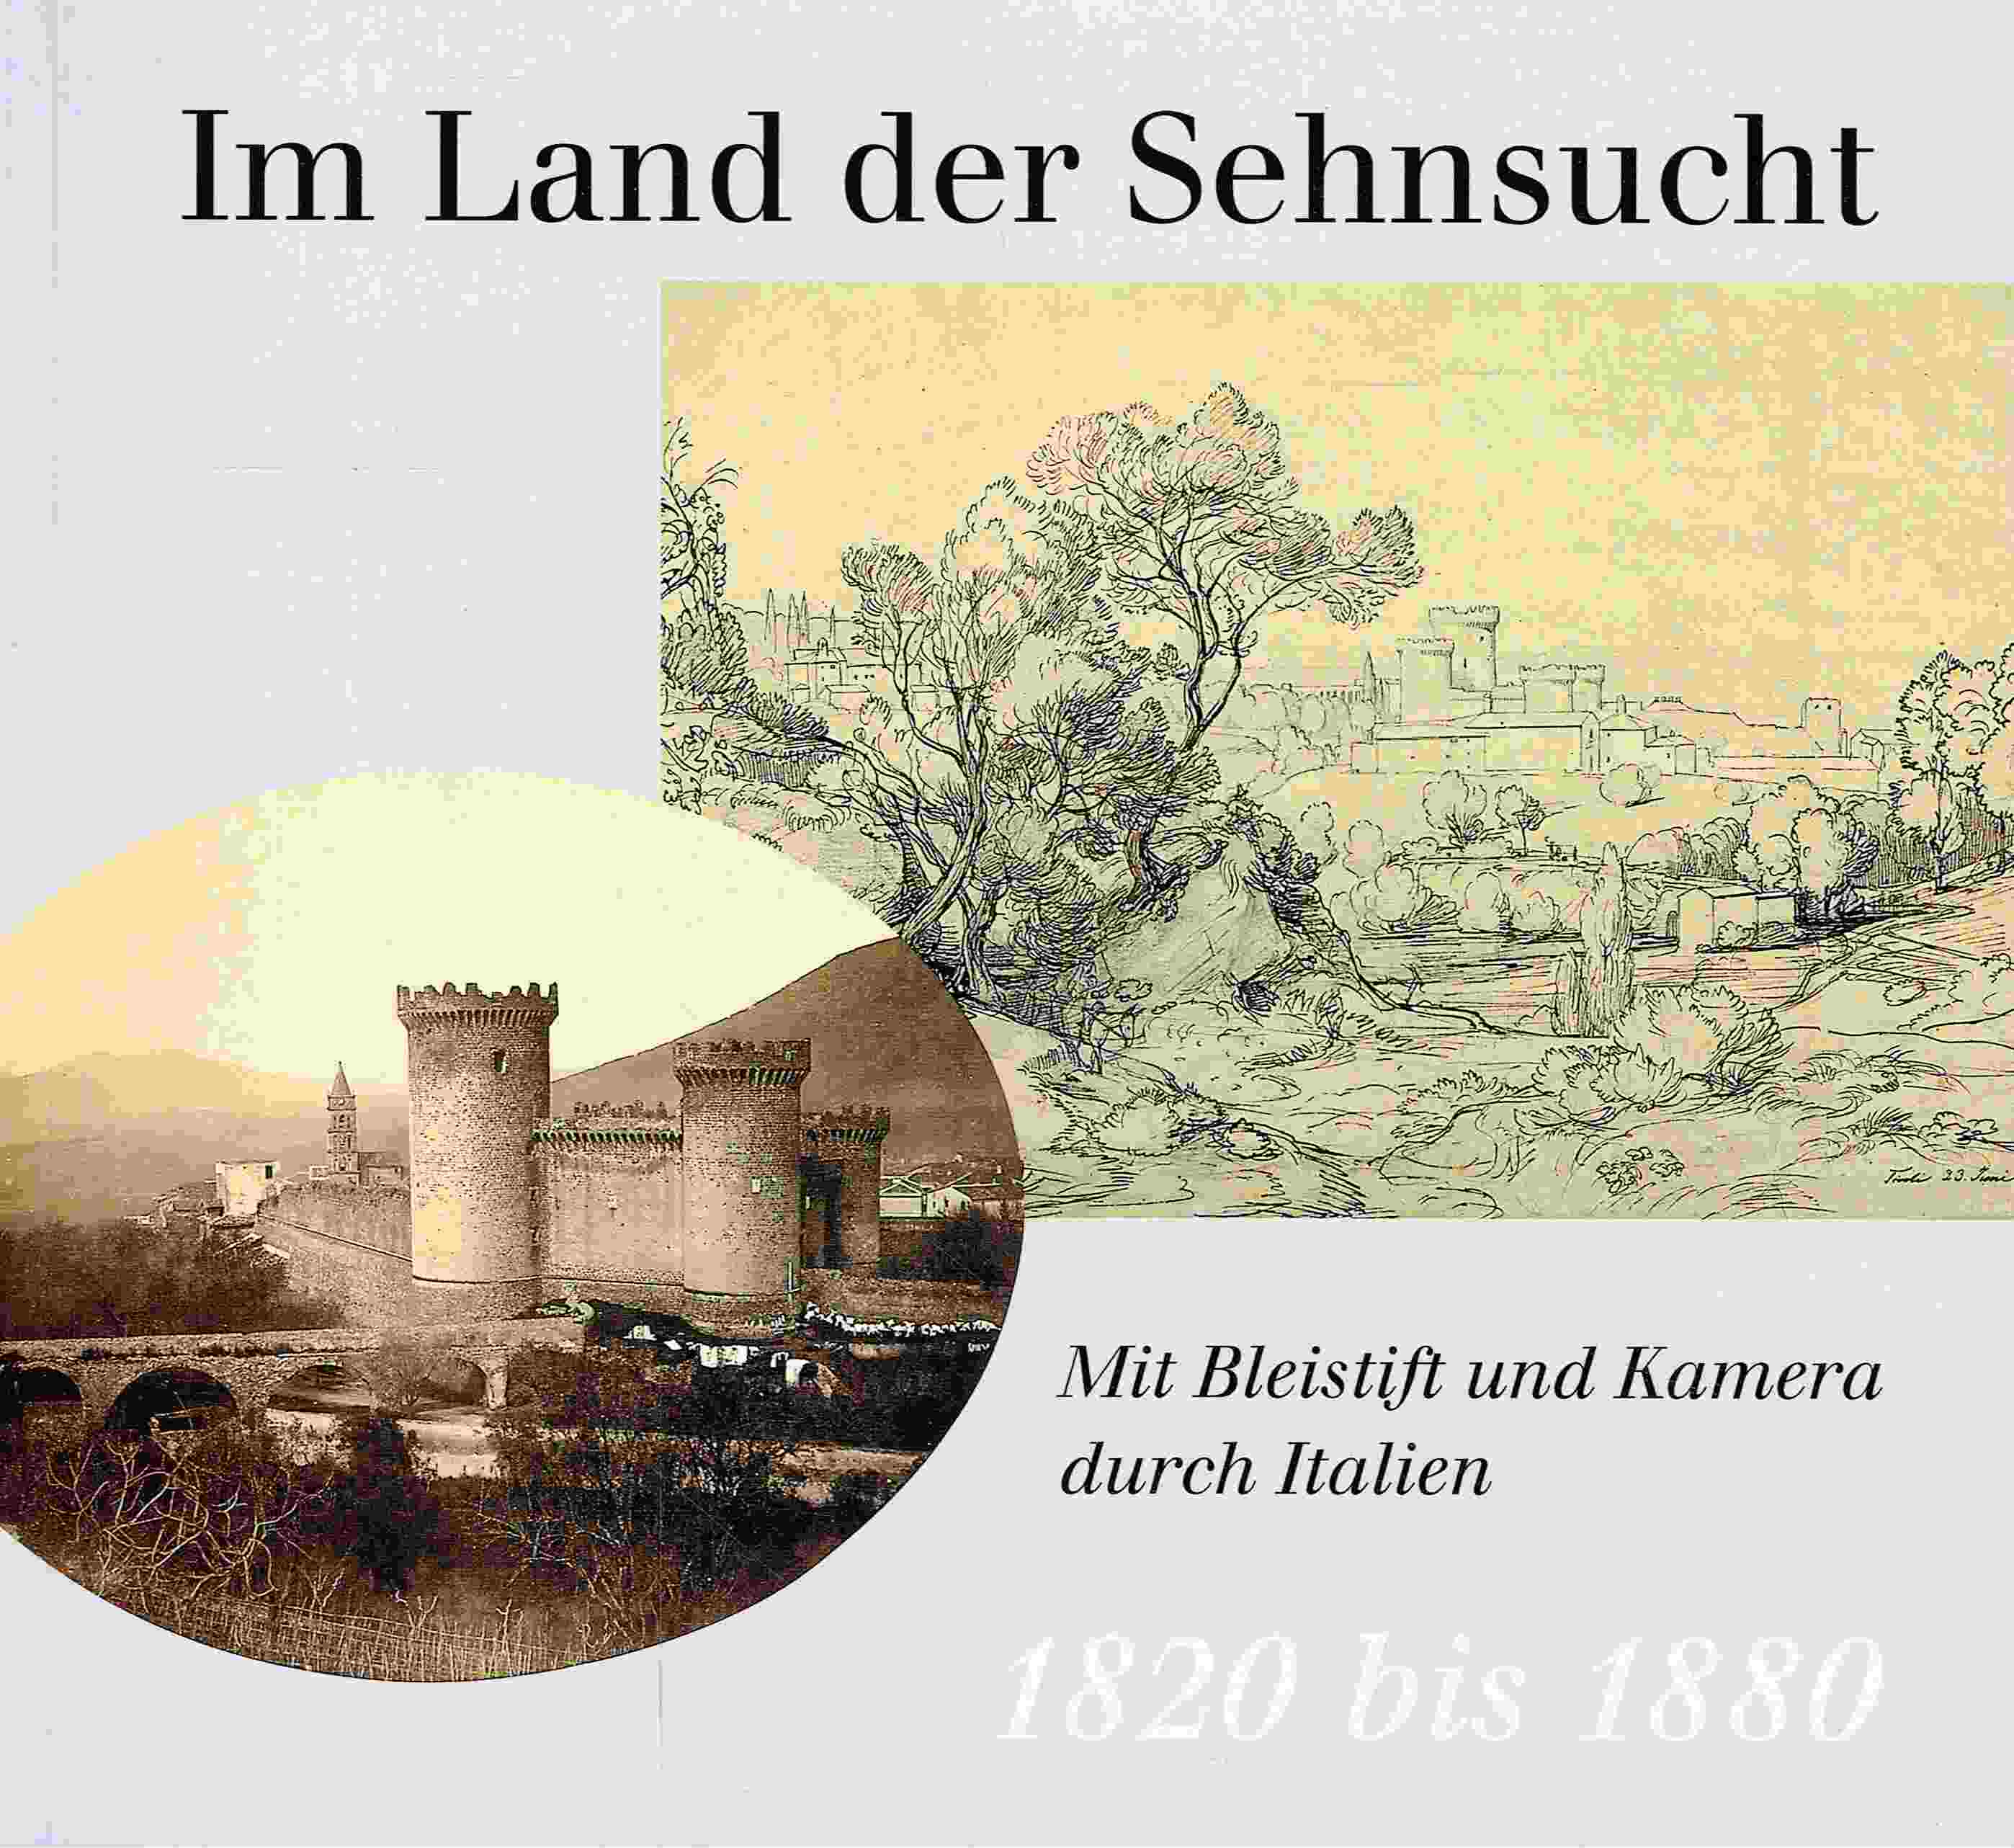 Im Land der Sehnsucht. Mit Bleistift und Kamera durch Italien. 1820 bis 1880. - Schulte-Arndt, Monika; Siegert, Dietmar (Hrsg.)